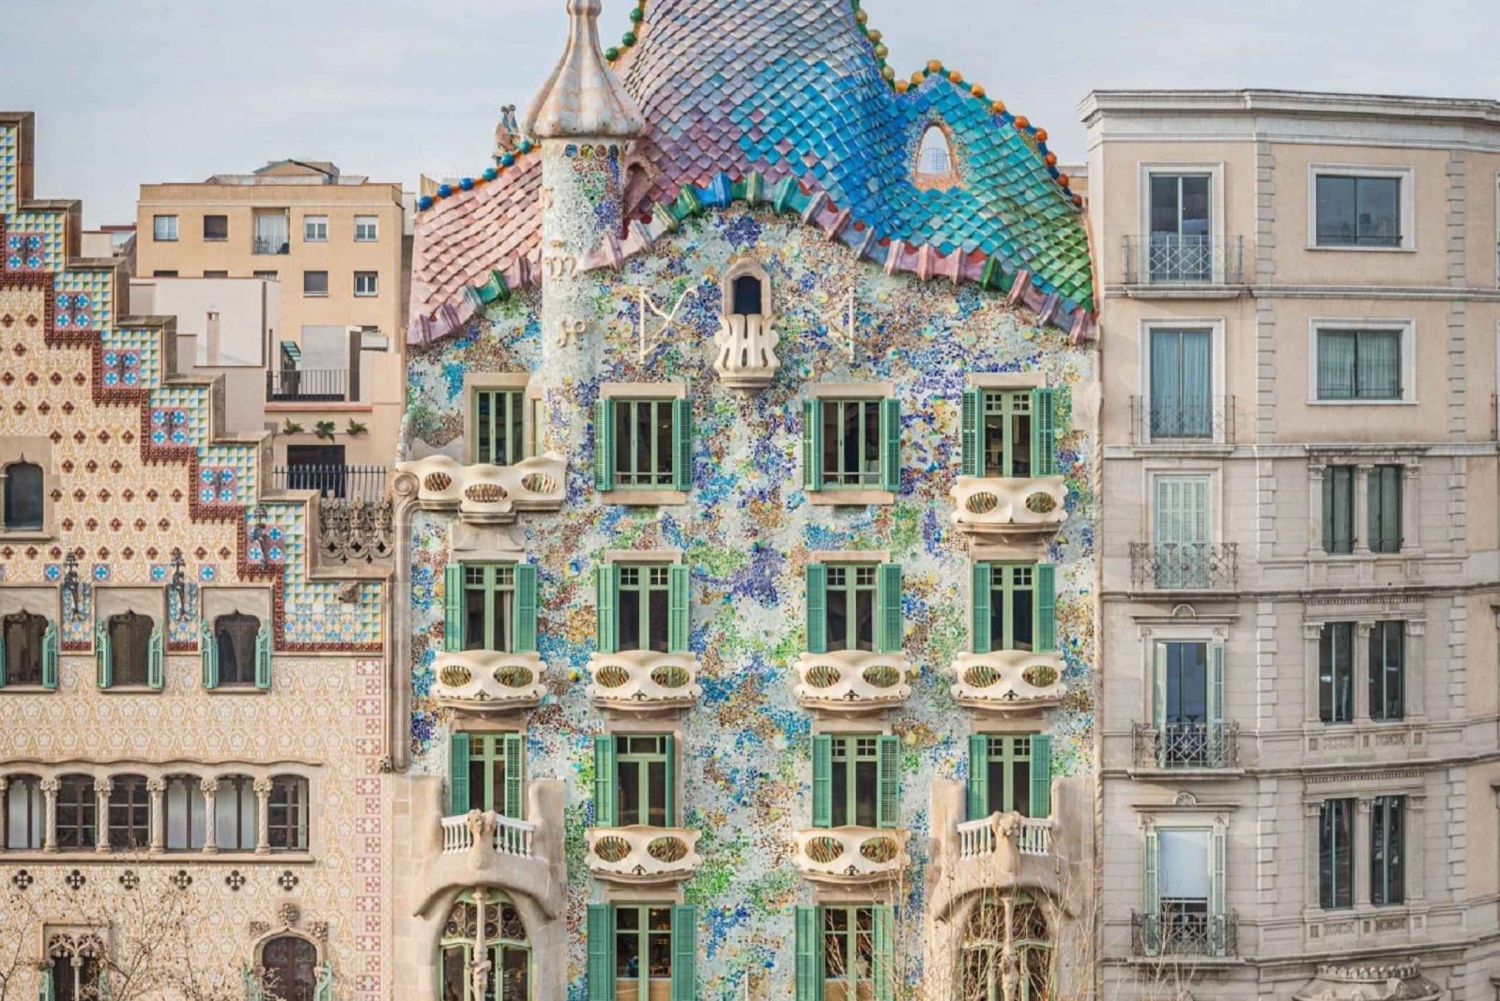 Barcellona: Tour guidato veloce di Casa Batlló